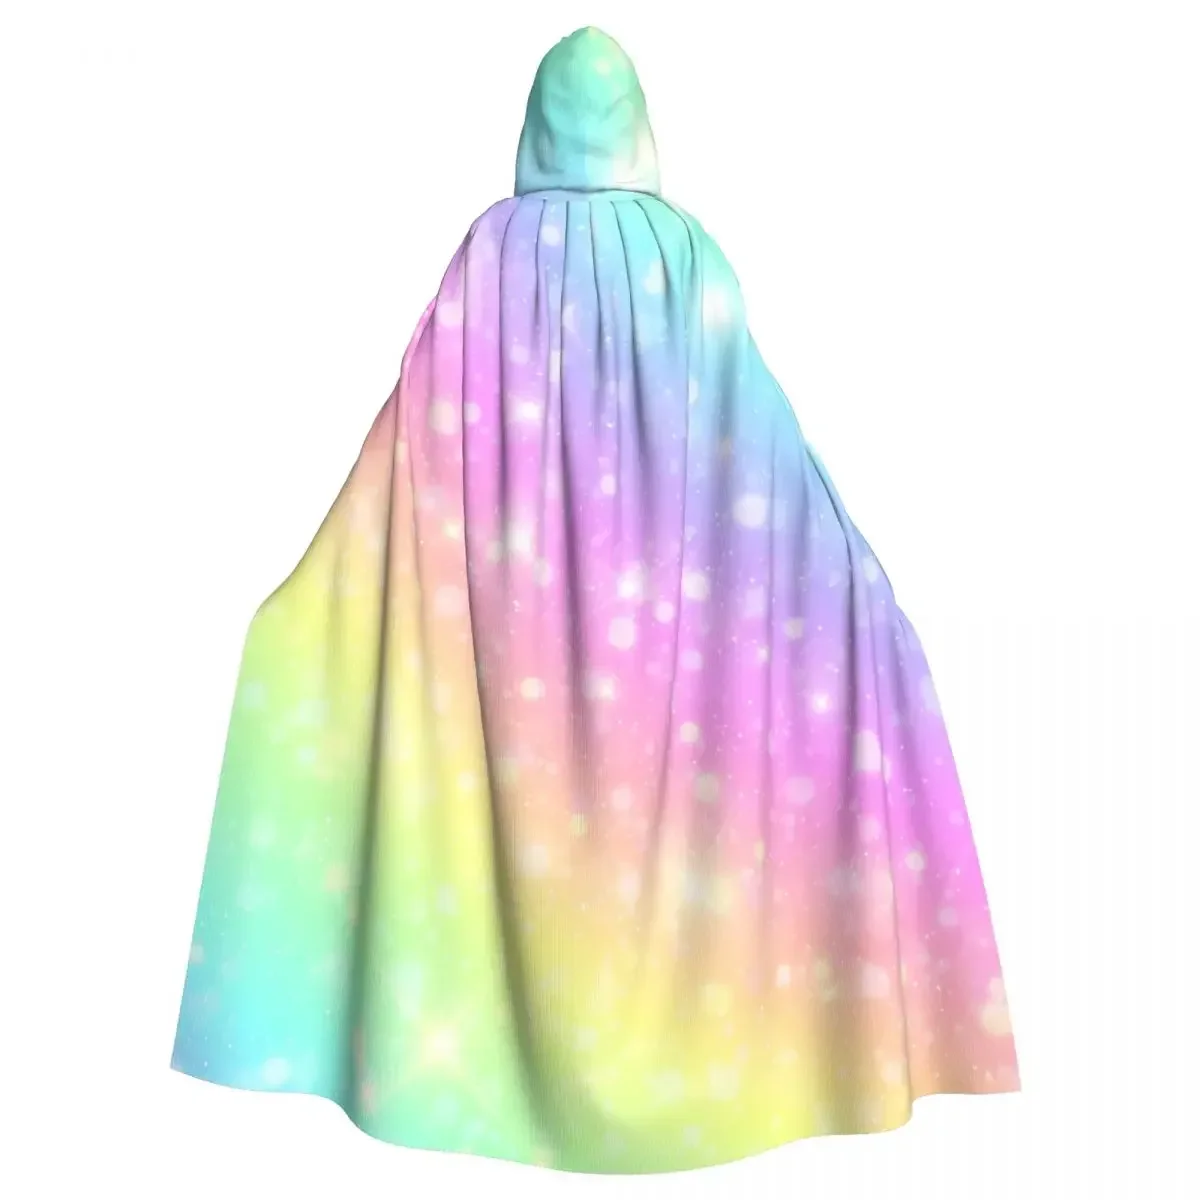 

Косплей средневековые костюмы галактика Фэнтези пастельного цвета небо с радугой капюшоном плащ накидки длинные халаты куртки пальто карнавал